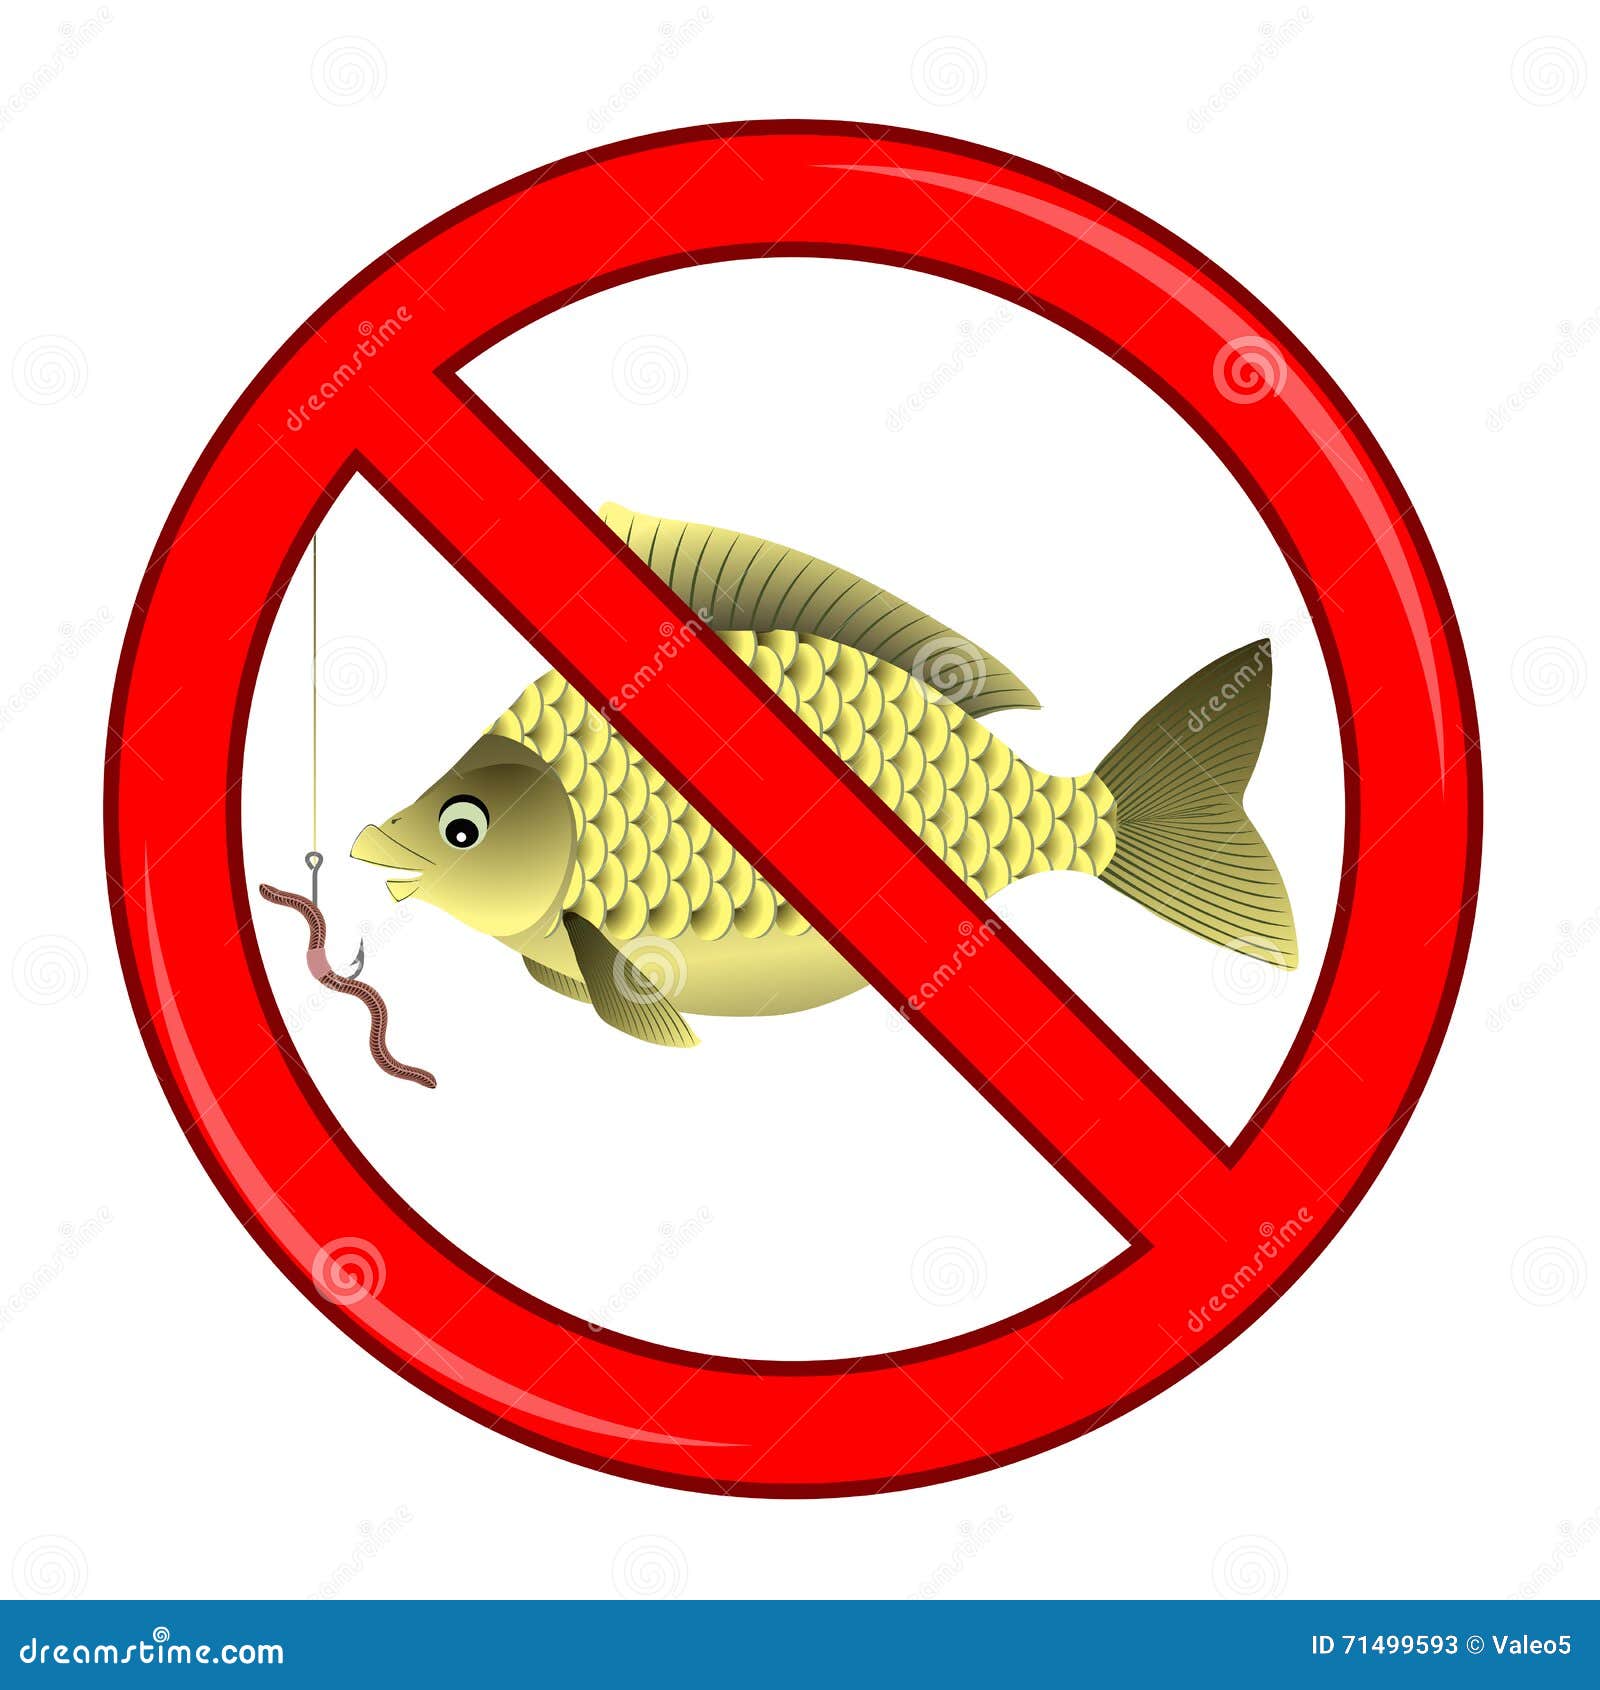 Можно ли ловить спиннингом в нерестовый запрет. Ловля рыбы запрещена. Ловить рыбу запрещено табличка. Ловля рыбы запрещена знак. Табличка запрета на рыбу.